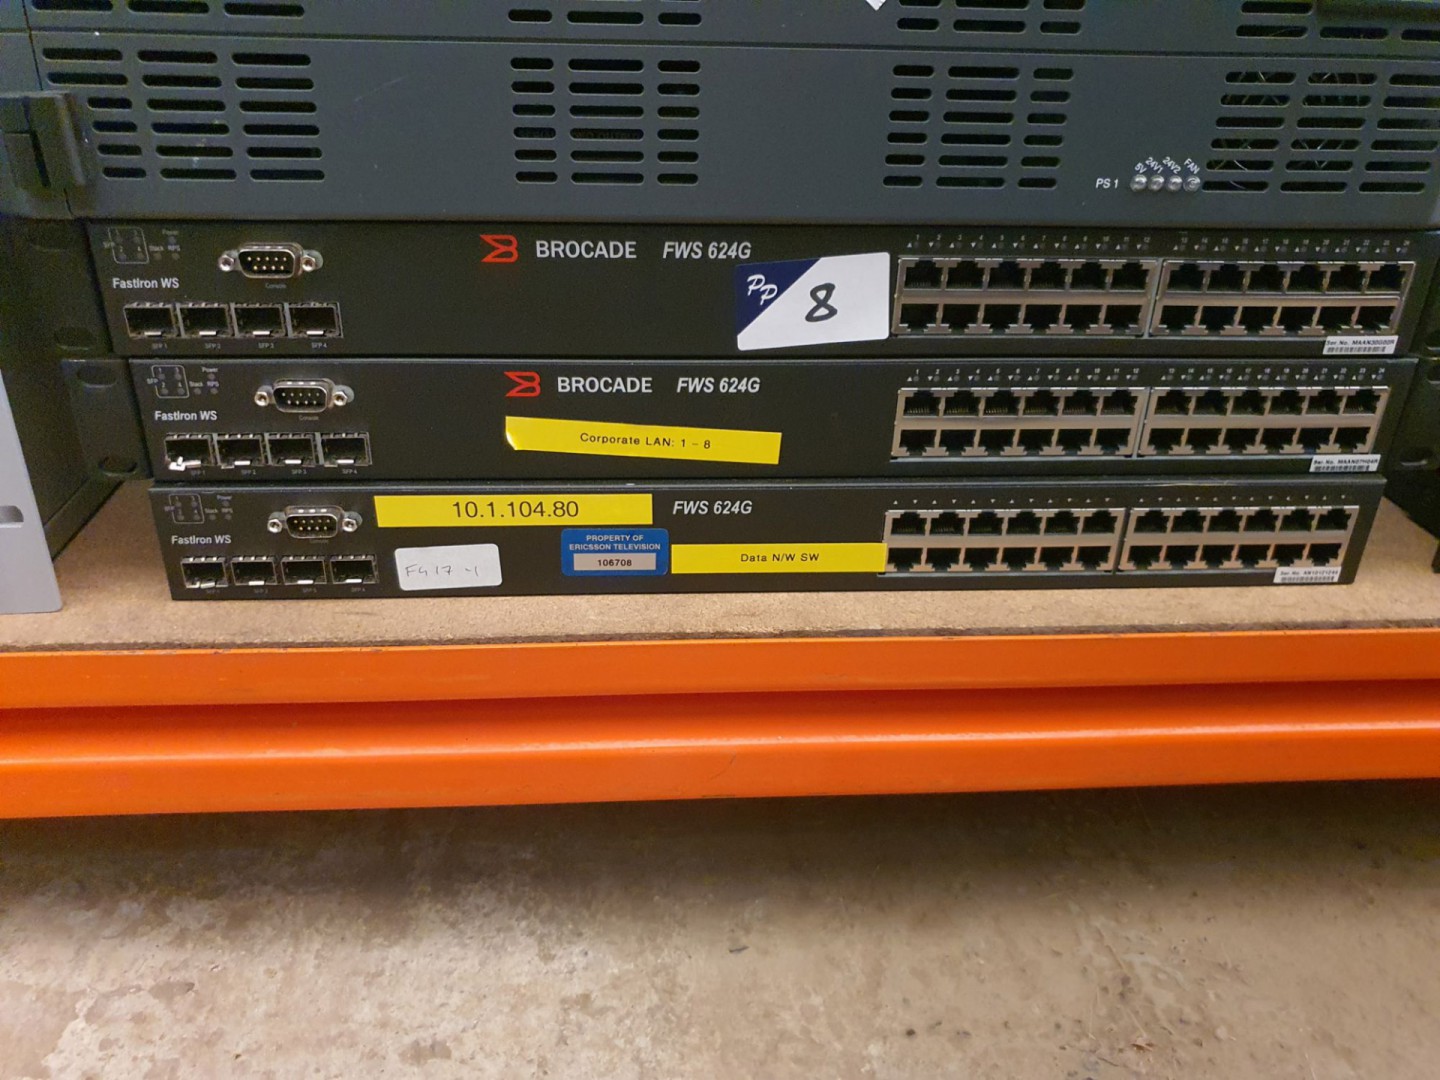 3x Brocade FWS 624G Gigabit network switches